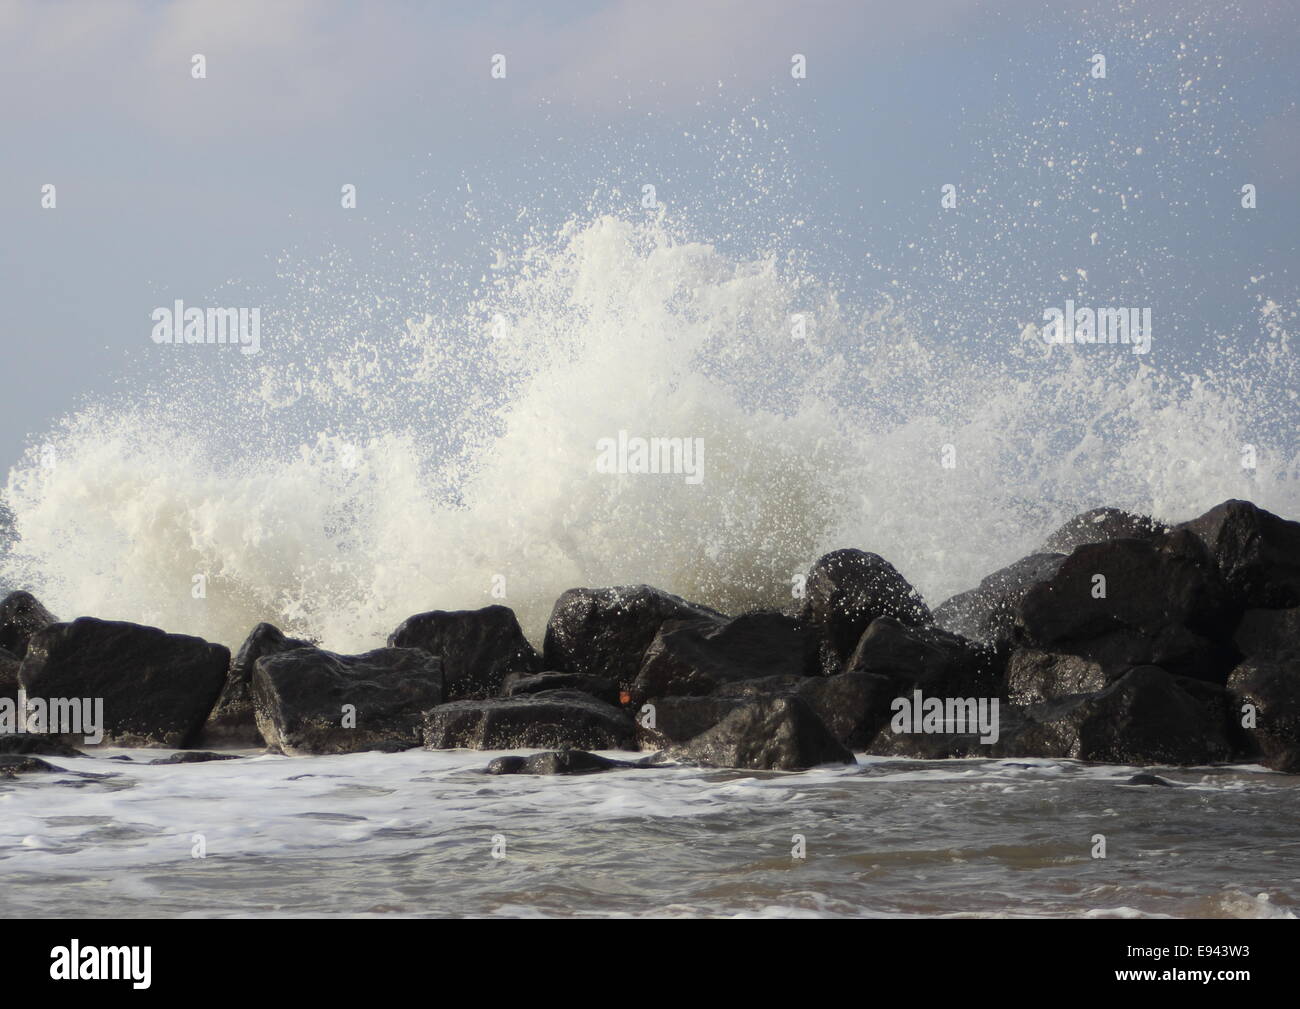 Crashing waves against black rocks at coast Stock Photo